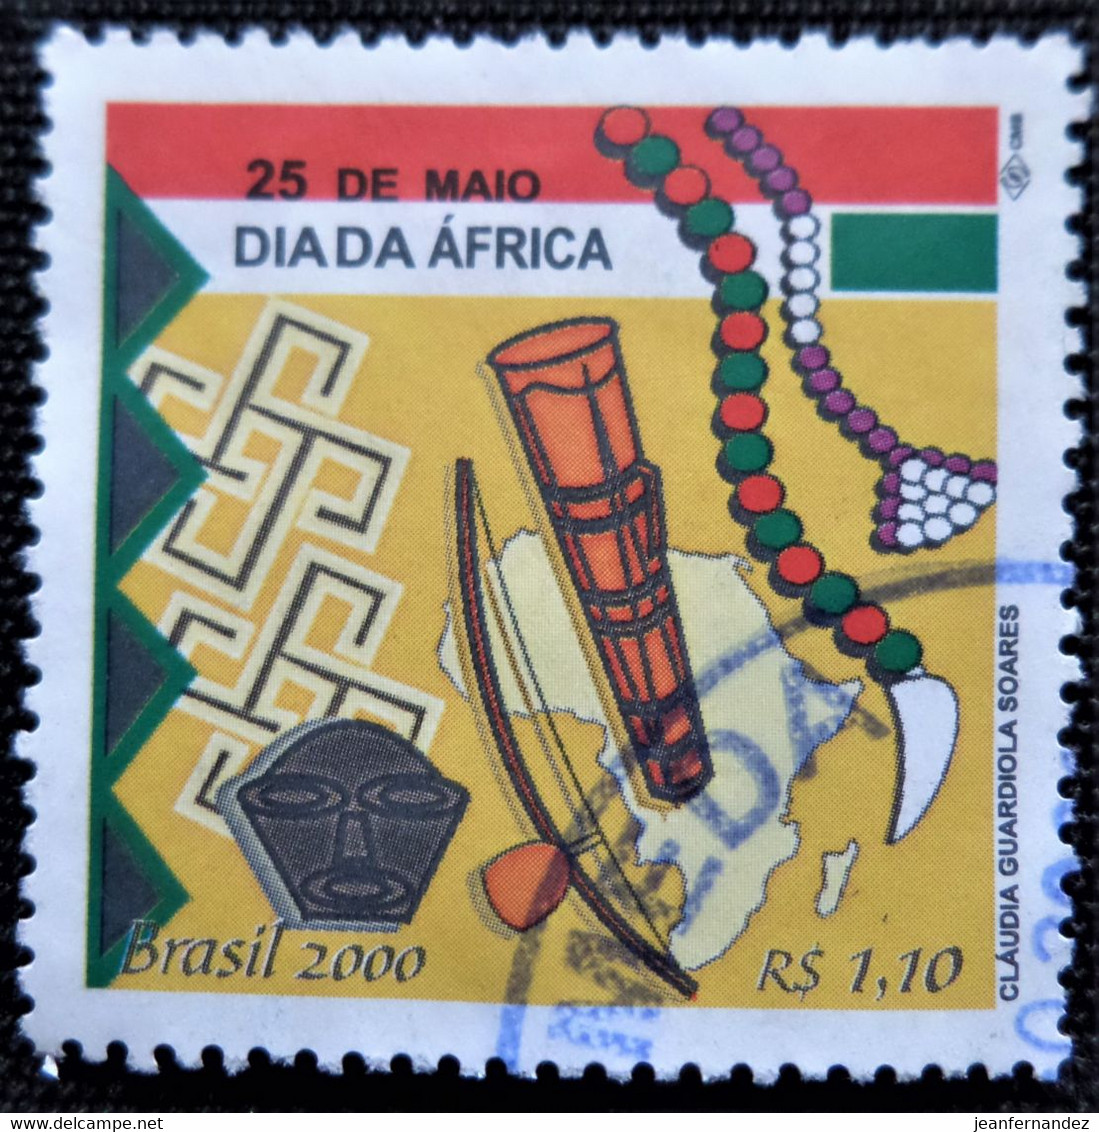 Timbre Du Brésil 2000 Africa Day   Stampworld N° 3057 - Gebruikt